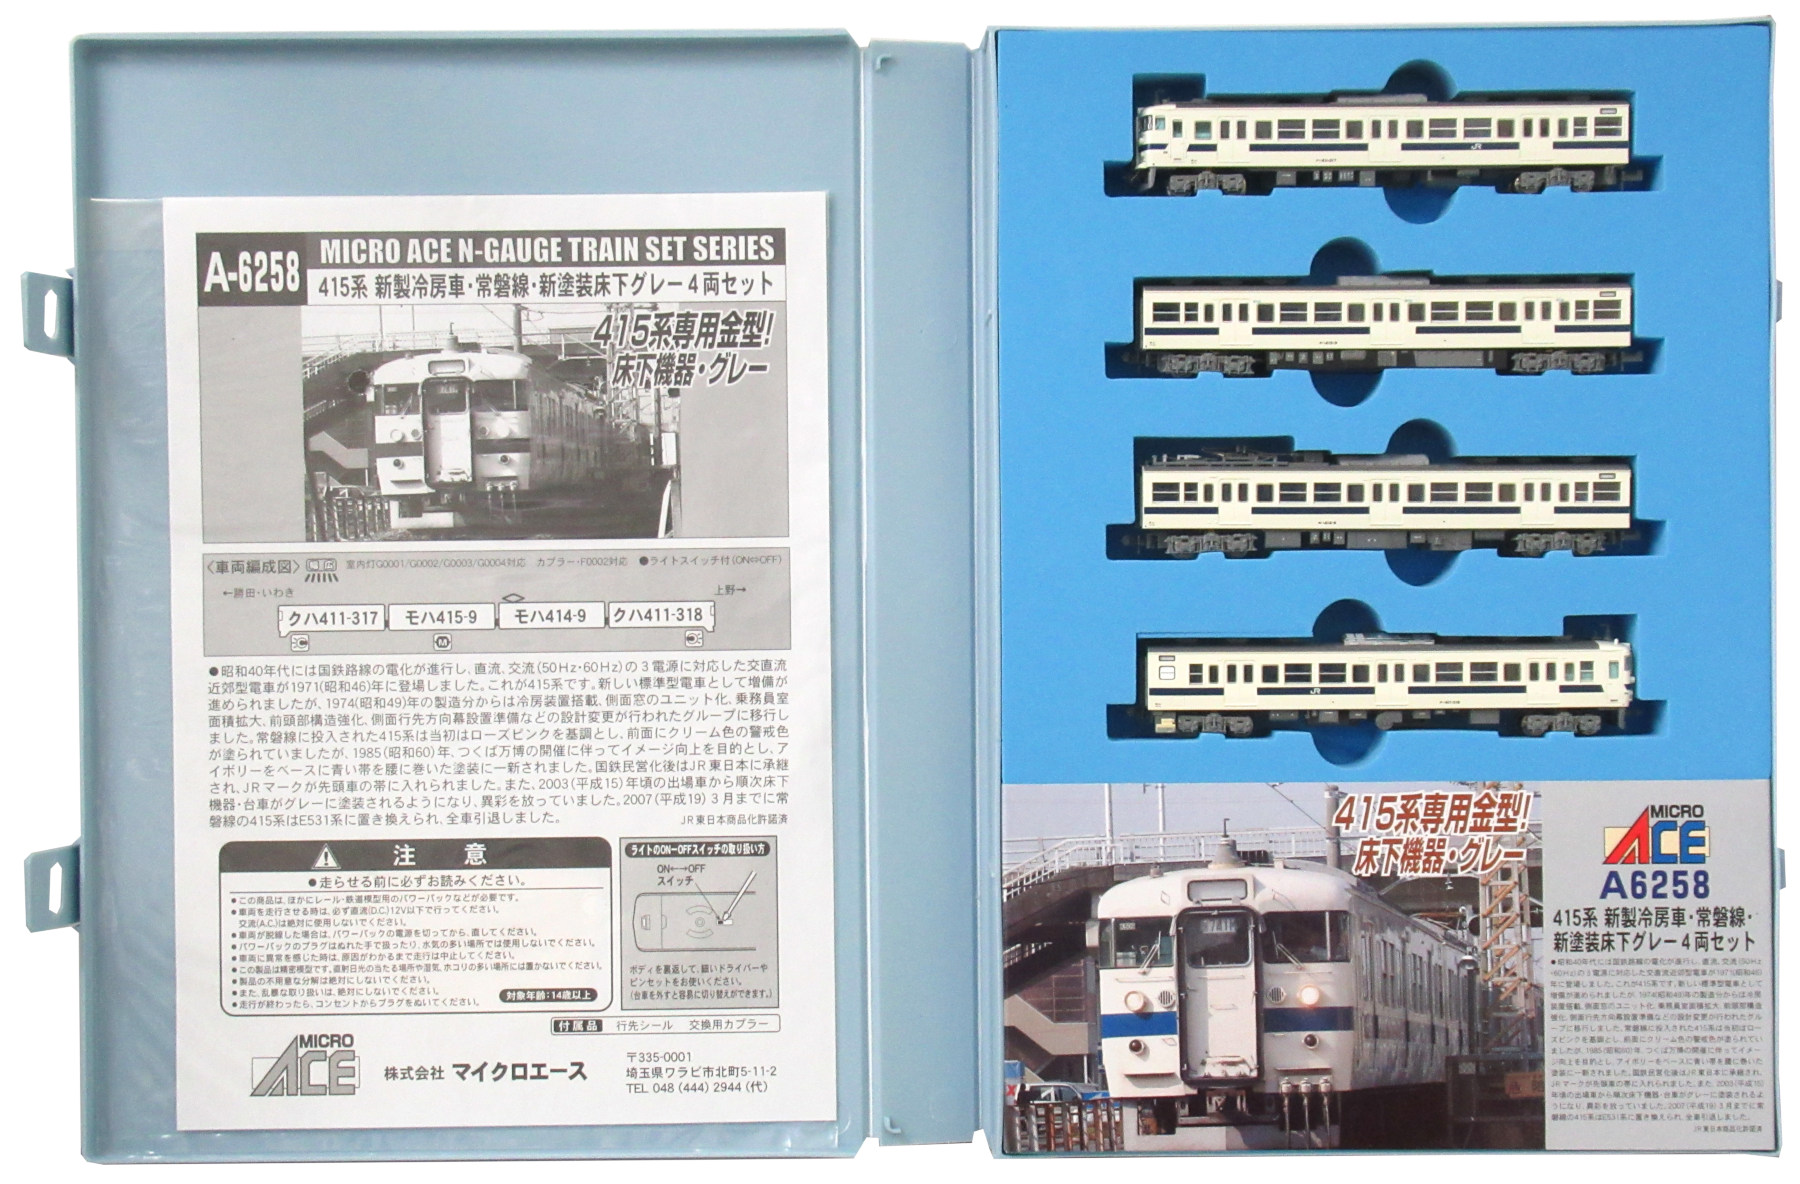 公式]鉄道模型(JR・国鉄 形式別(N)、近郊形車両、415系)カテゴリ